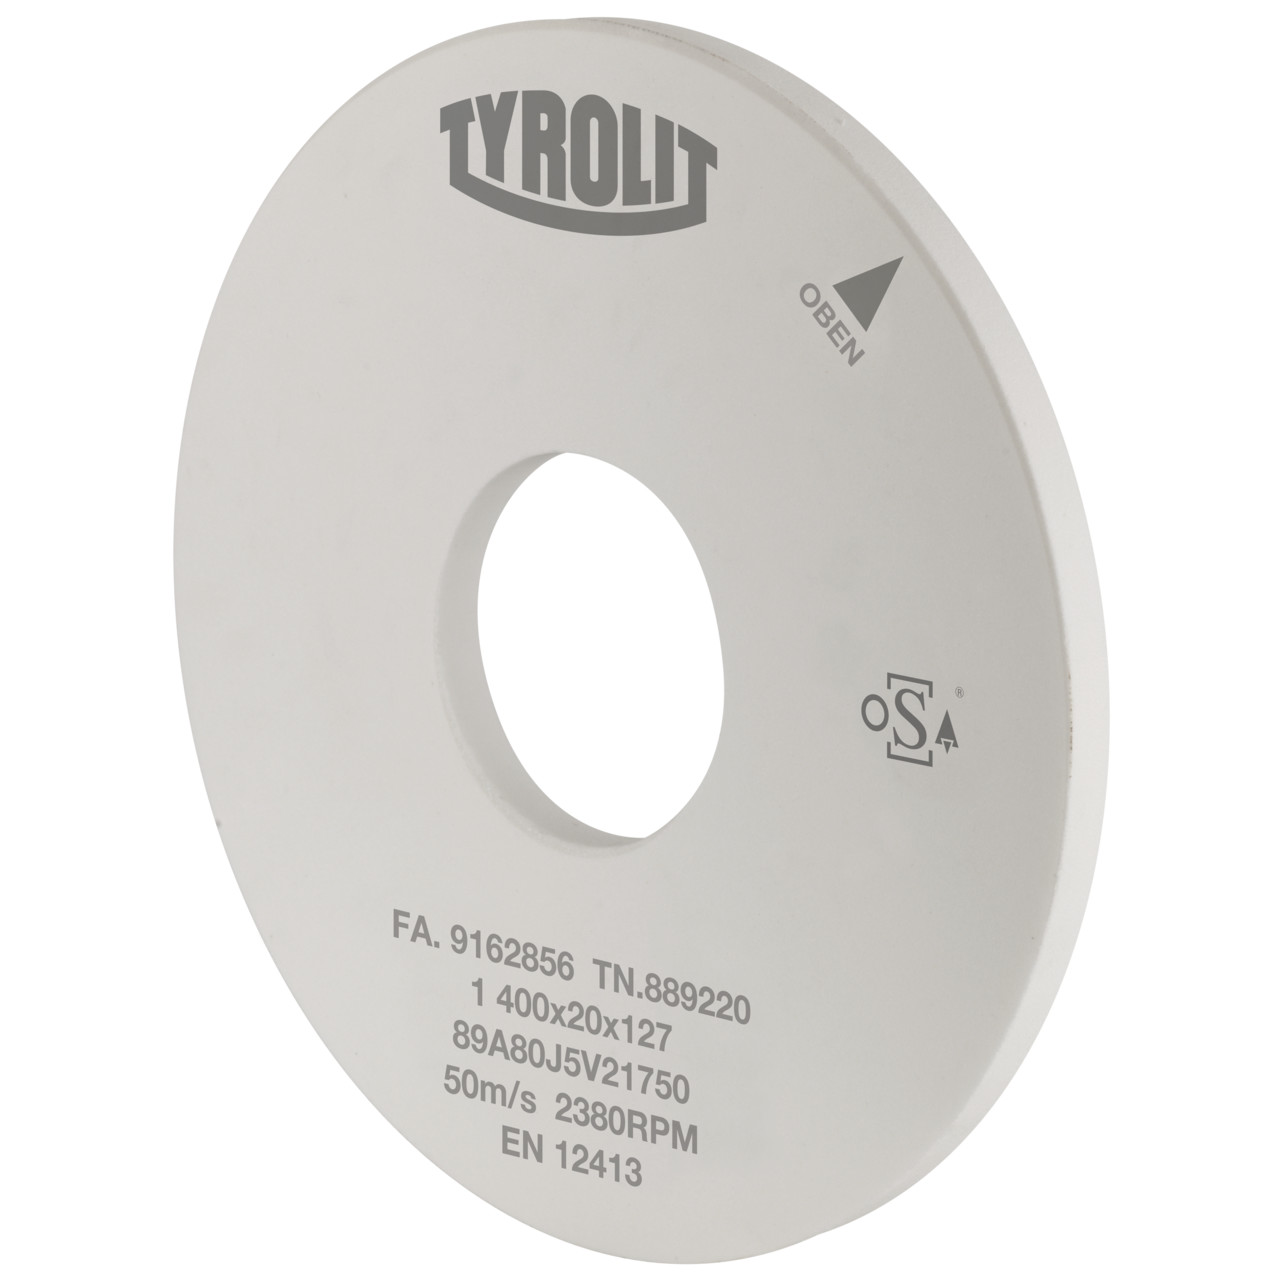 Tyrolit Rettifica cilindrica esterna Ceramica convenzionale DxDxH 300x40x76.2 Per acciai non legati e basso legati, forma: 1, Art. 690785